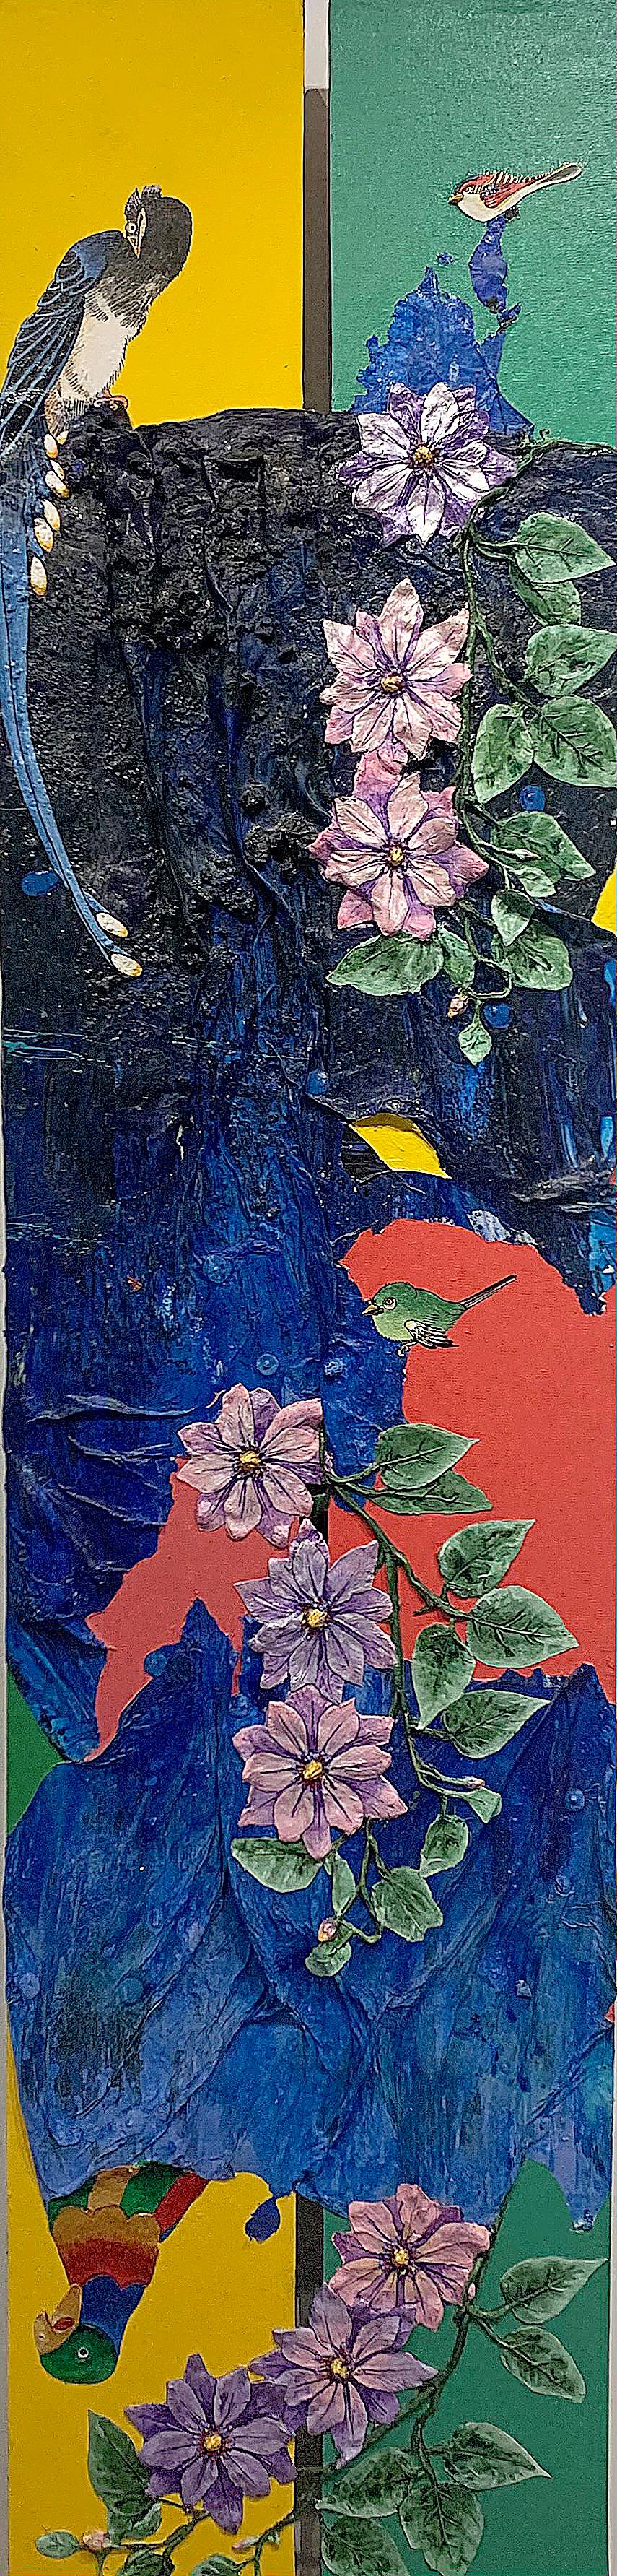 Gemälde aus Schaumstoff, Acryl und Mischtechnik, gelb, lila, blau  – Mixed Media Art von Ben Darby